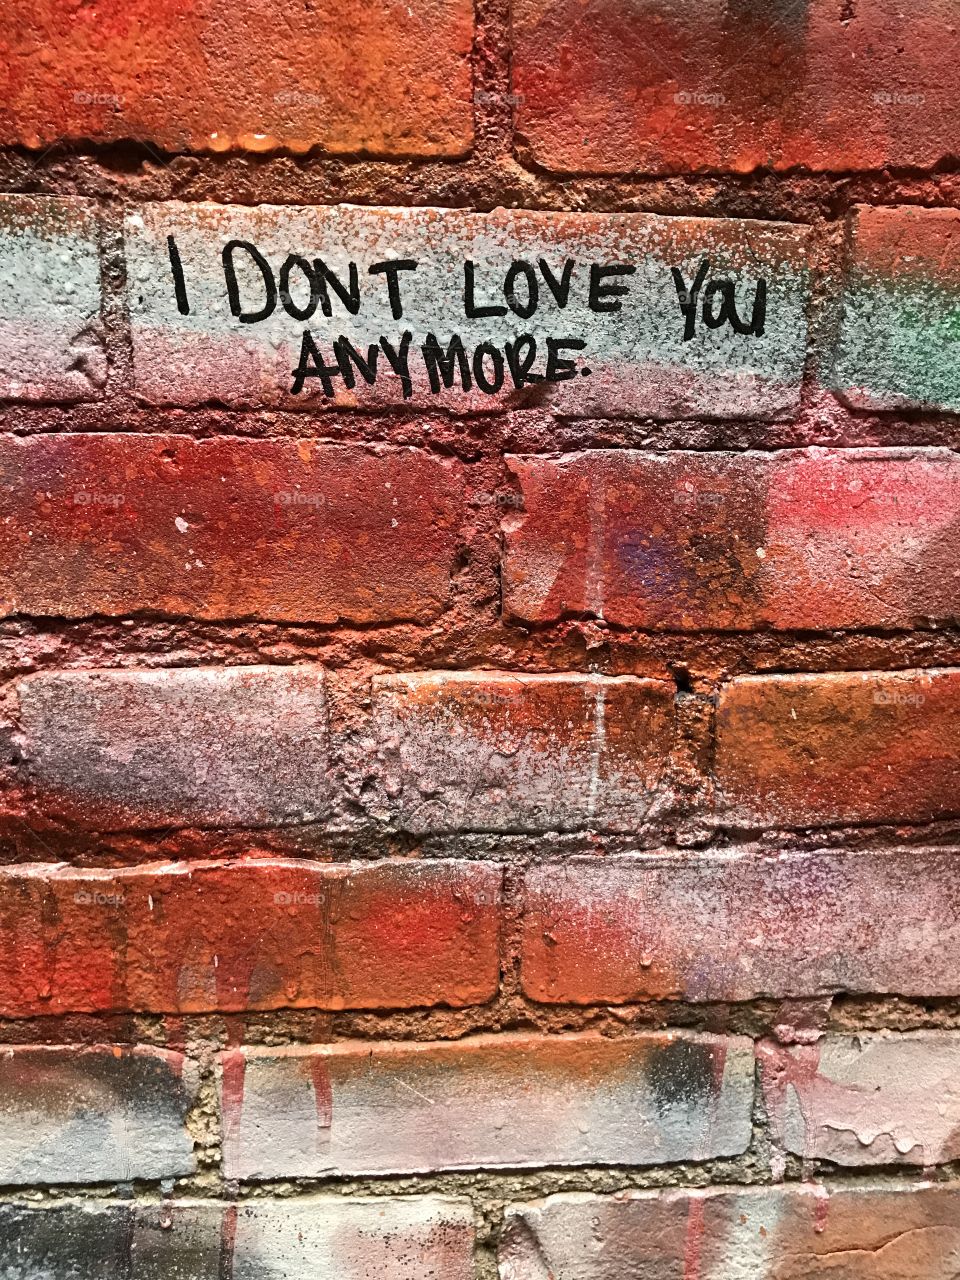 Brick Graffiti